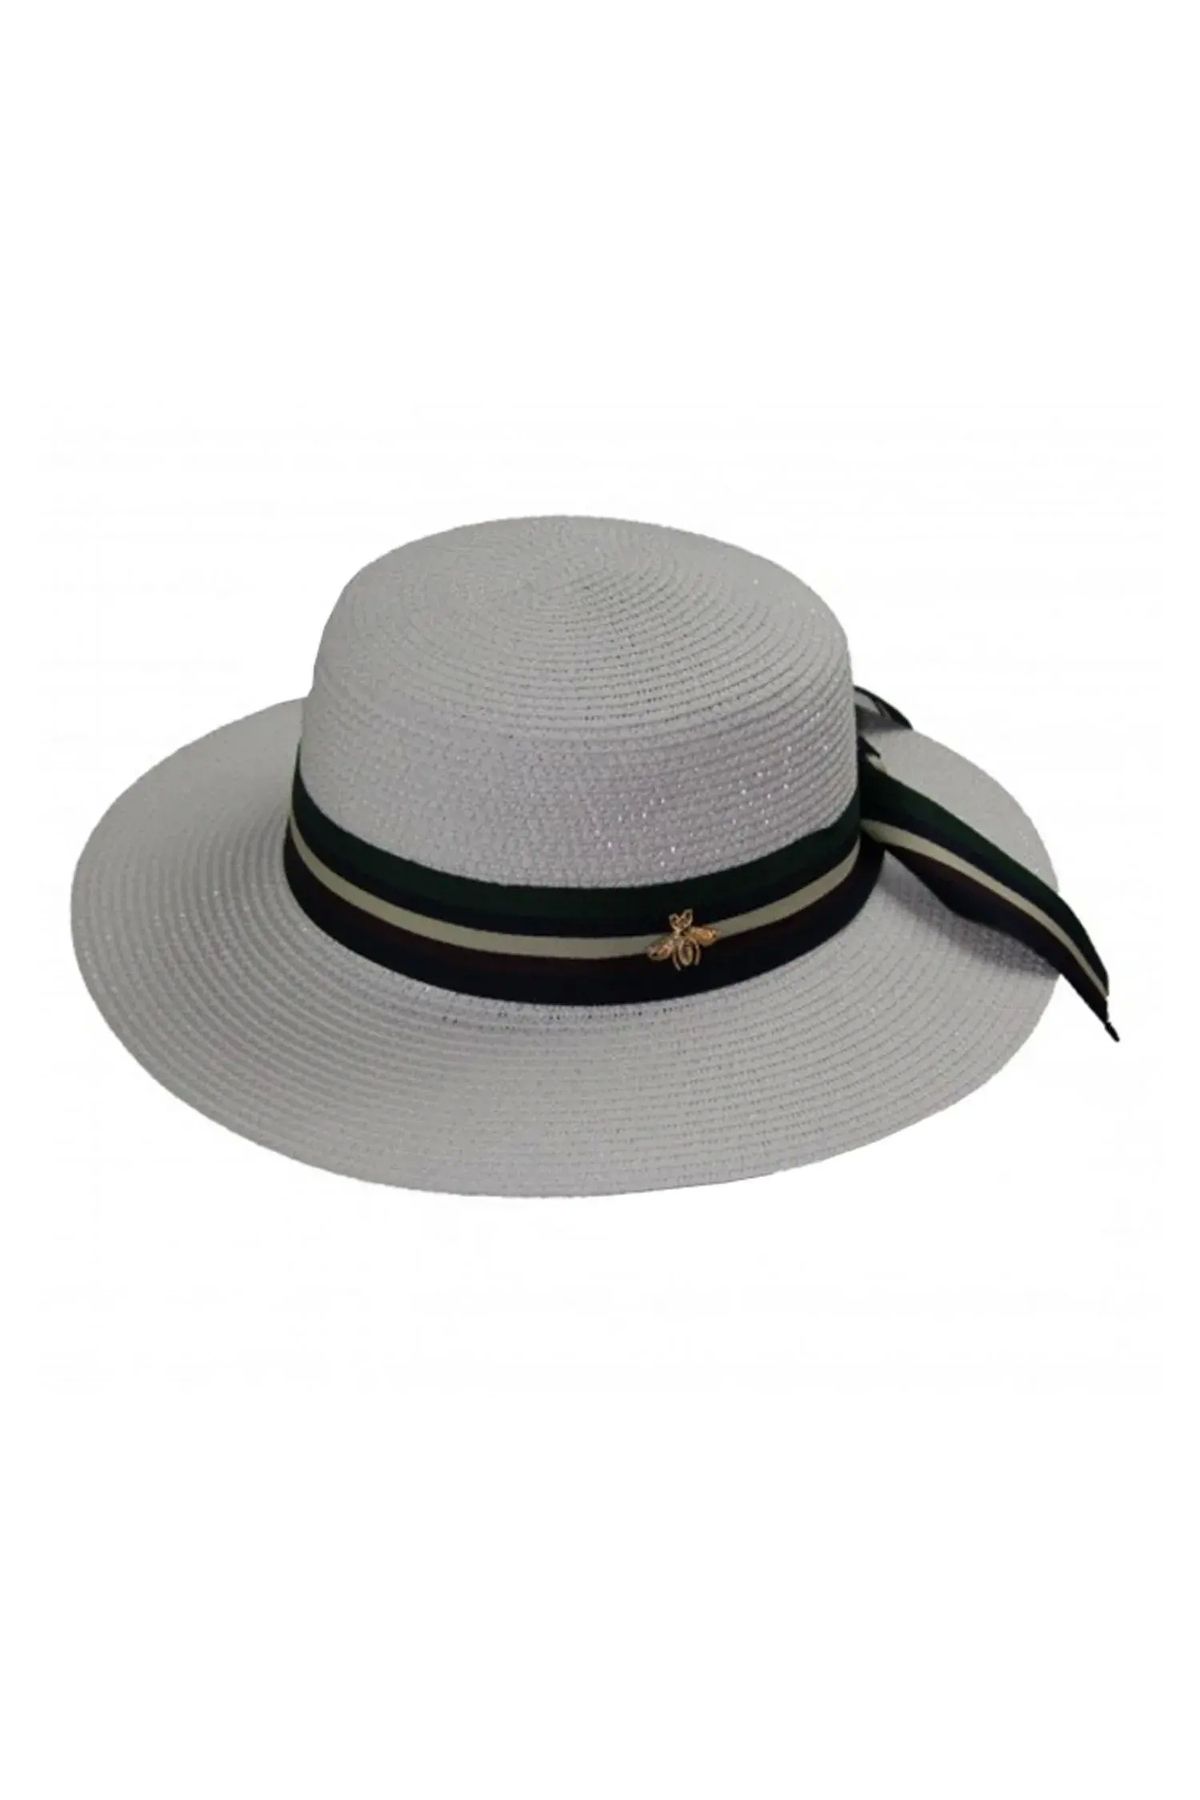 Bay Şapkacı Kadın Şeritli Hasır Şapka 3853